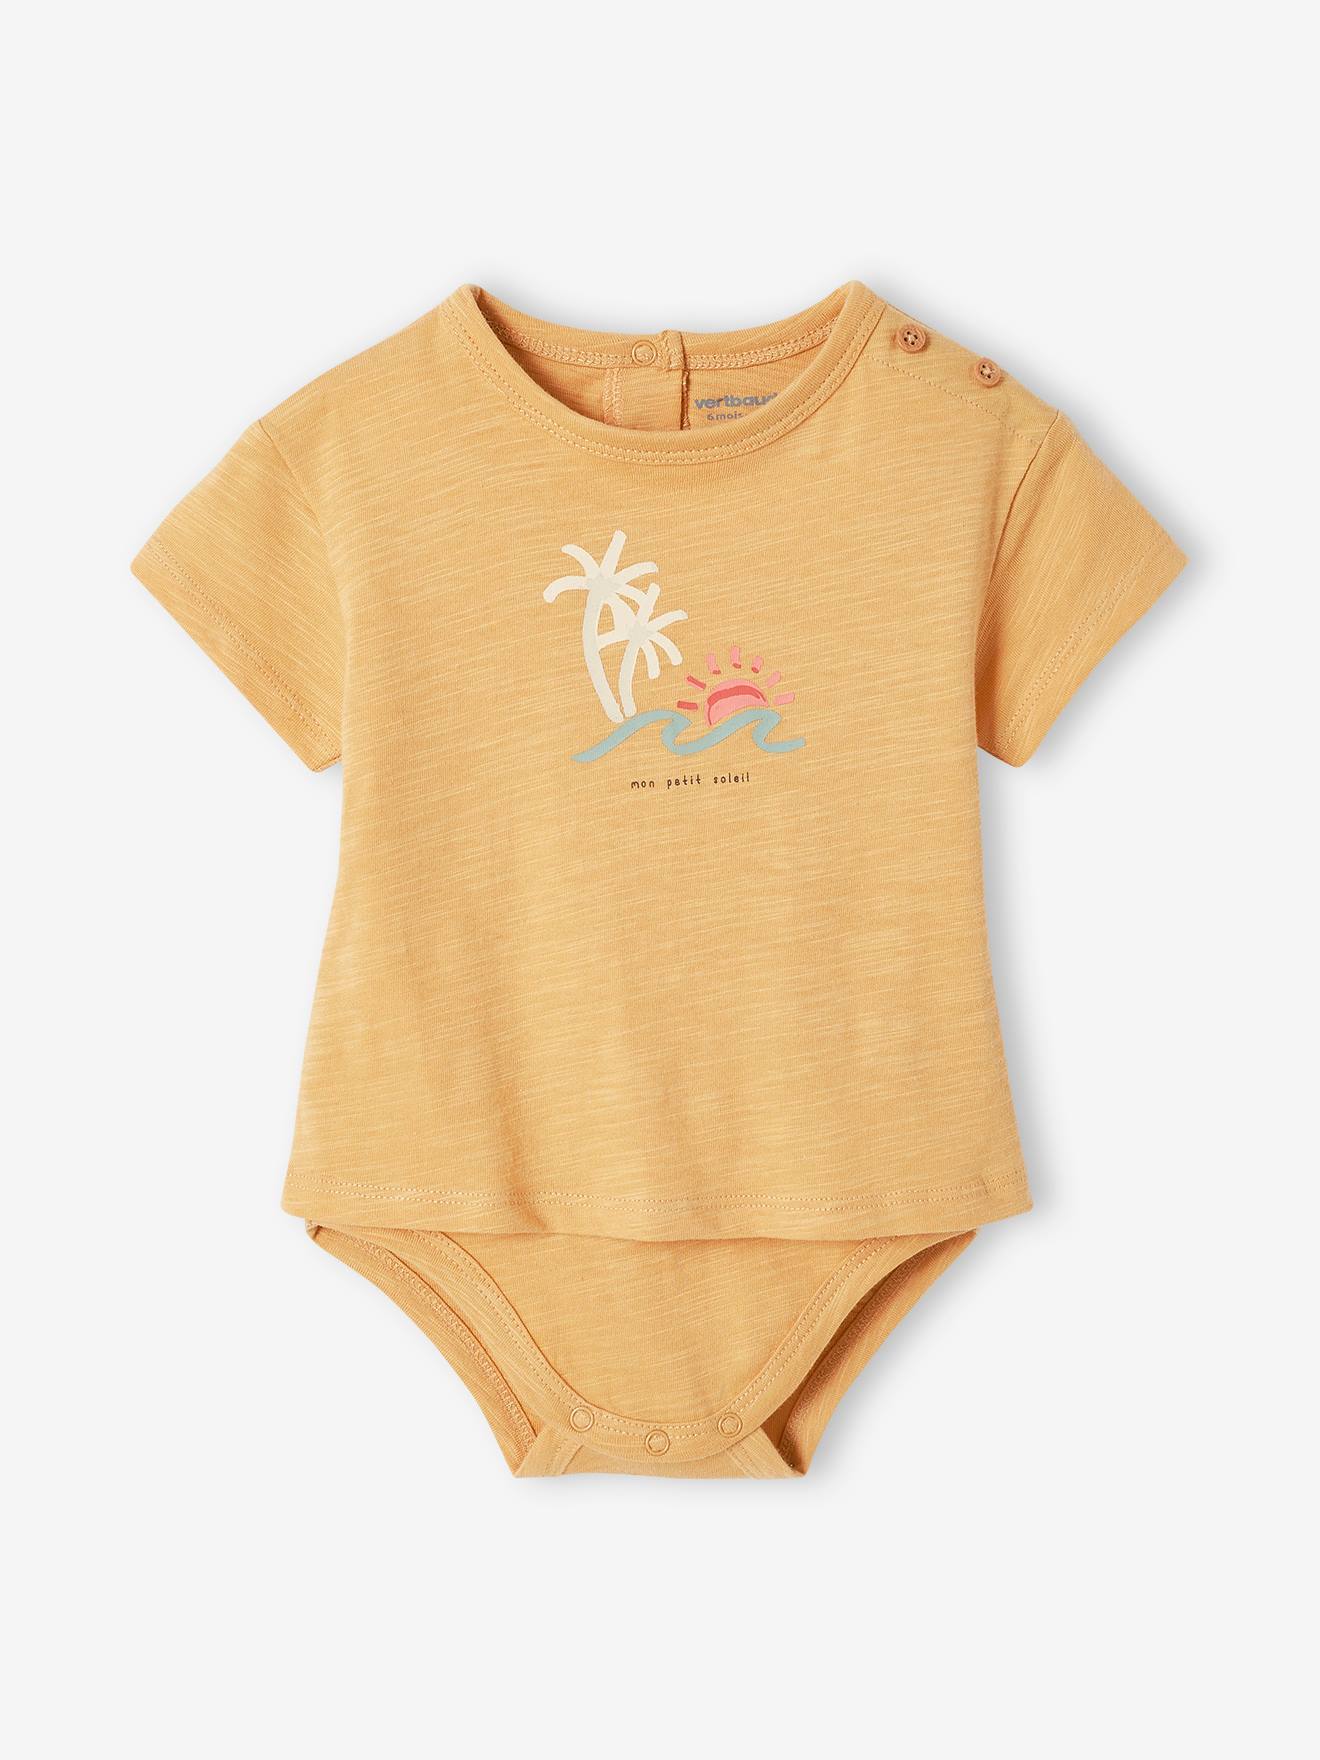 T-shirt body Palmier bébé manches courtes jaune pâle